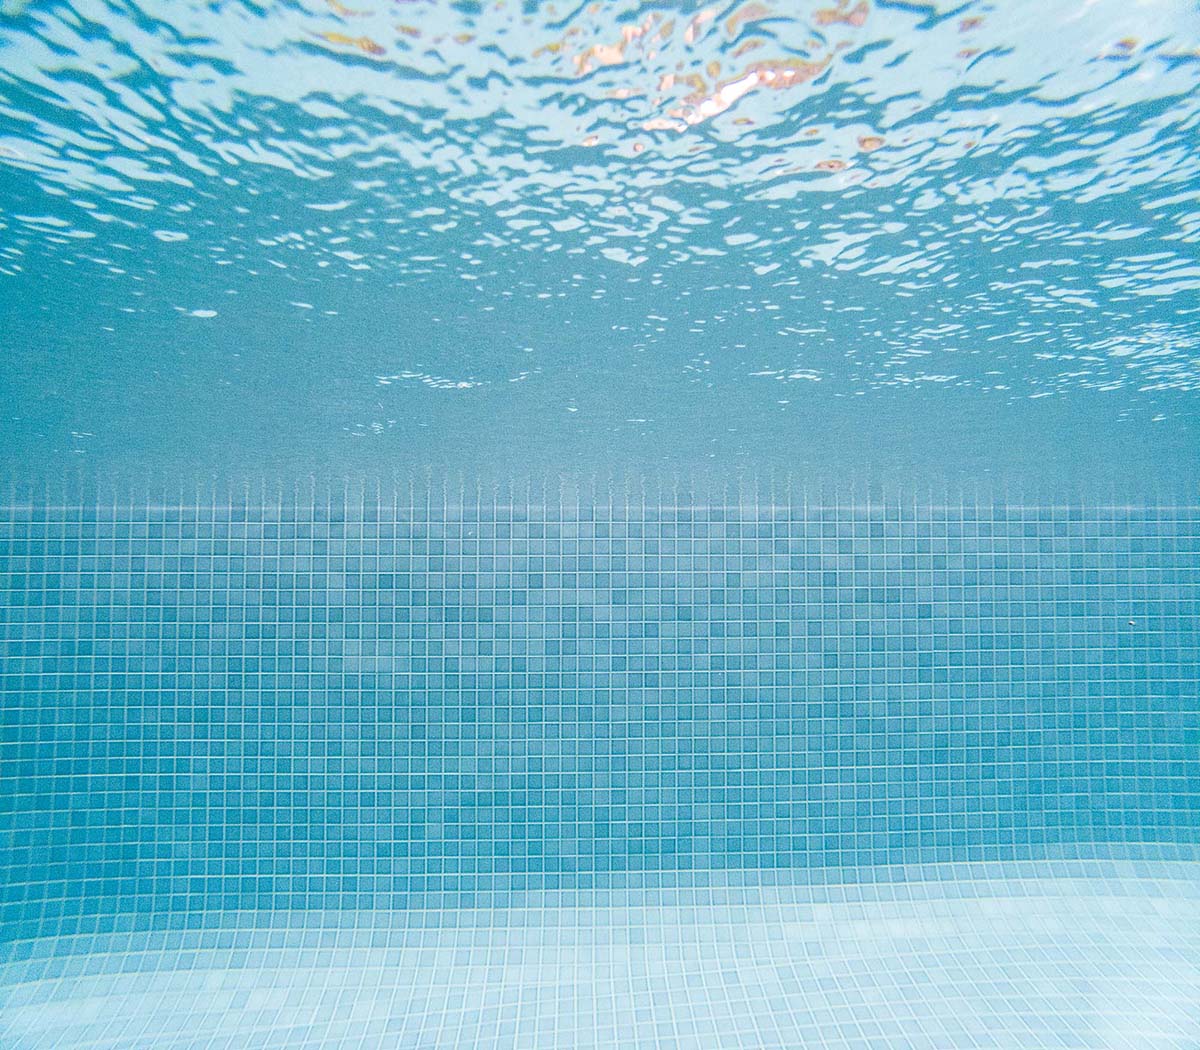 Peppercorn CMC105 fully-tiled underwater